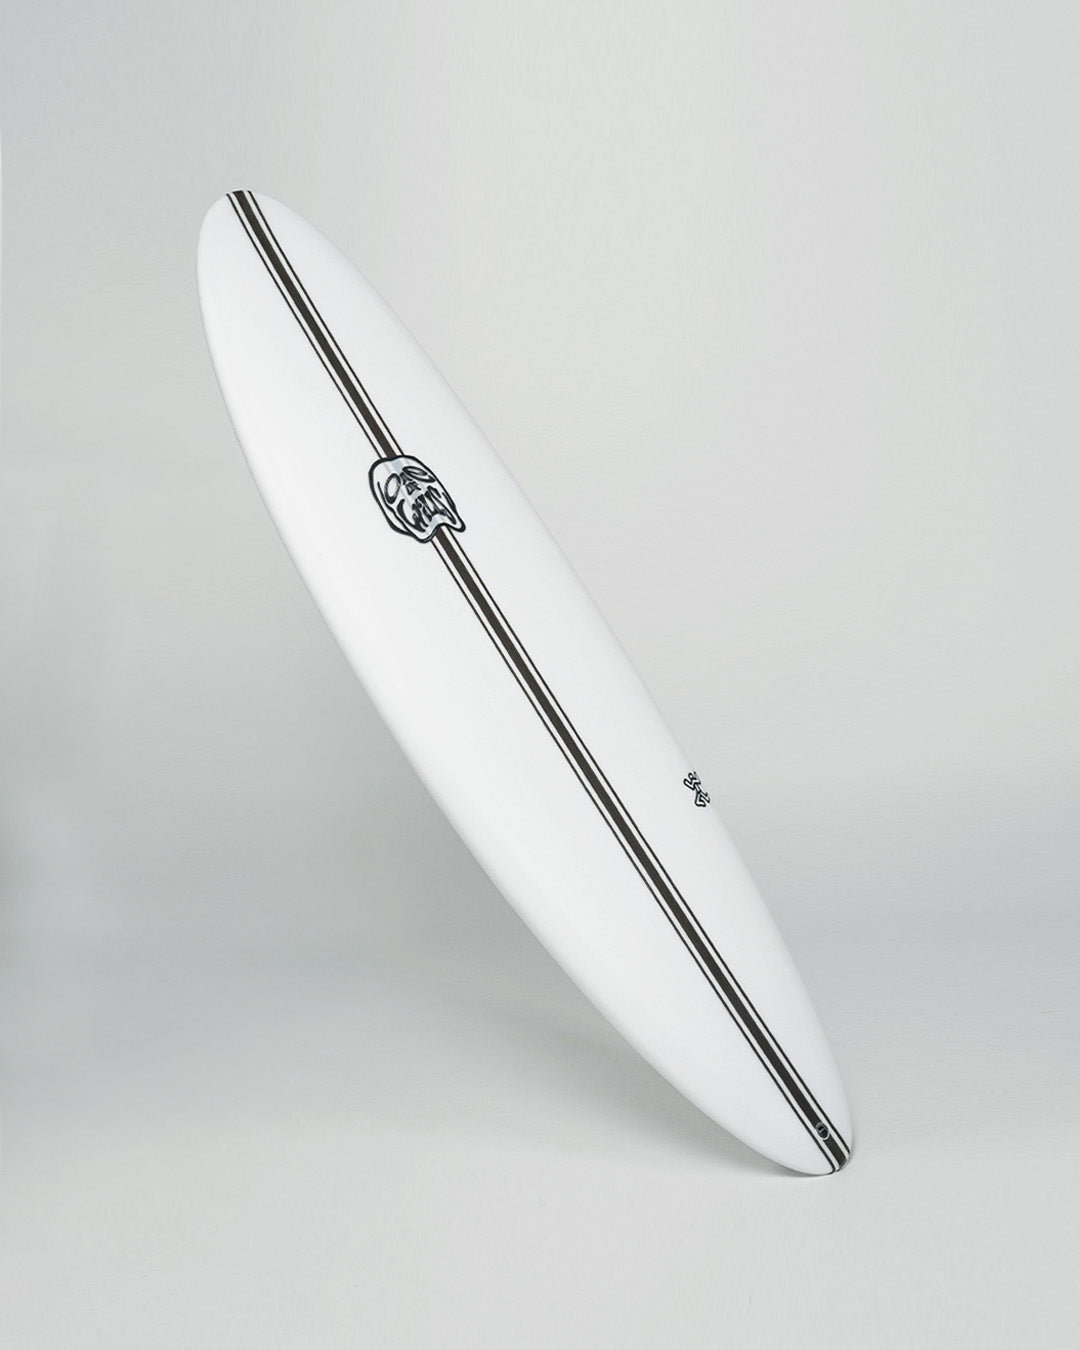 WILL WEBBER'S EPS 'DUGONG' SURFBOARD